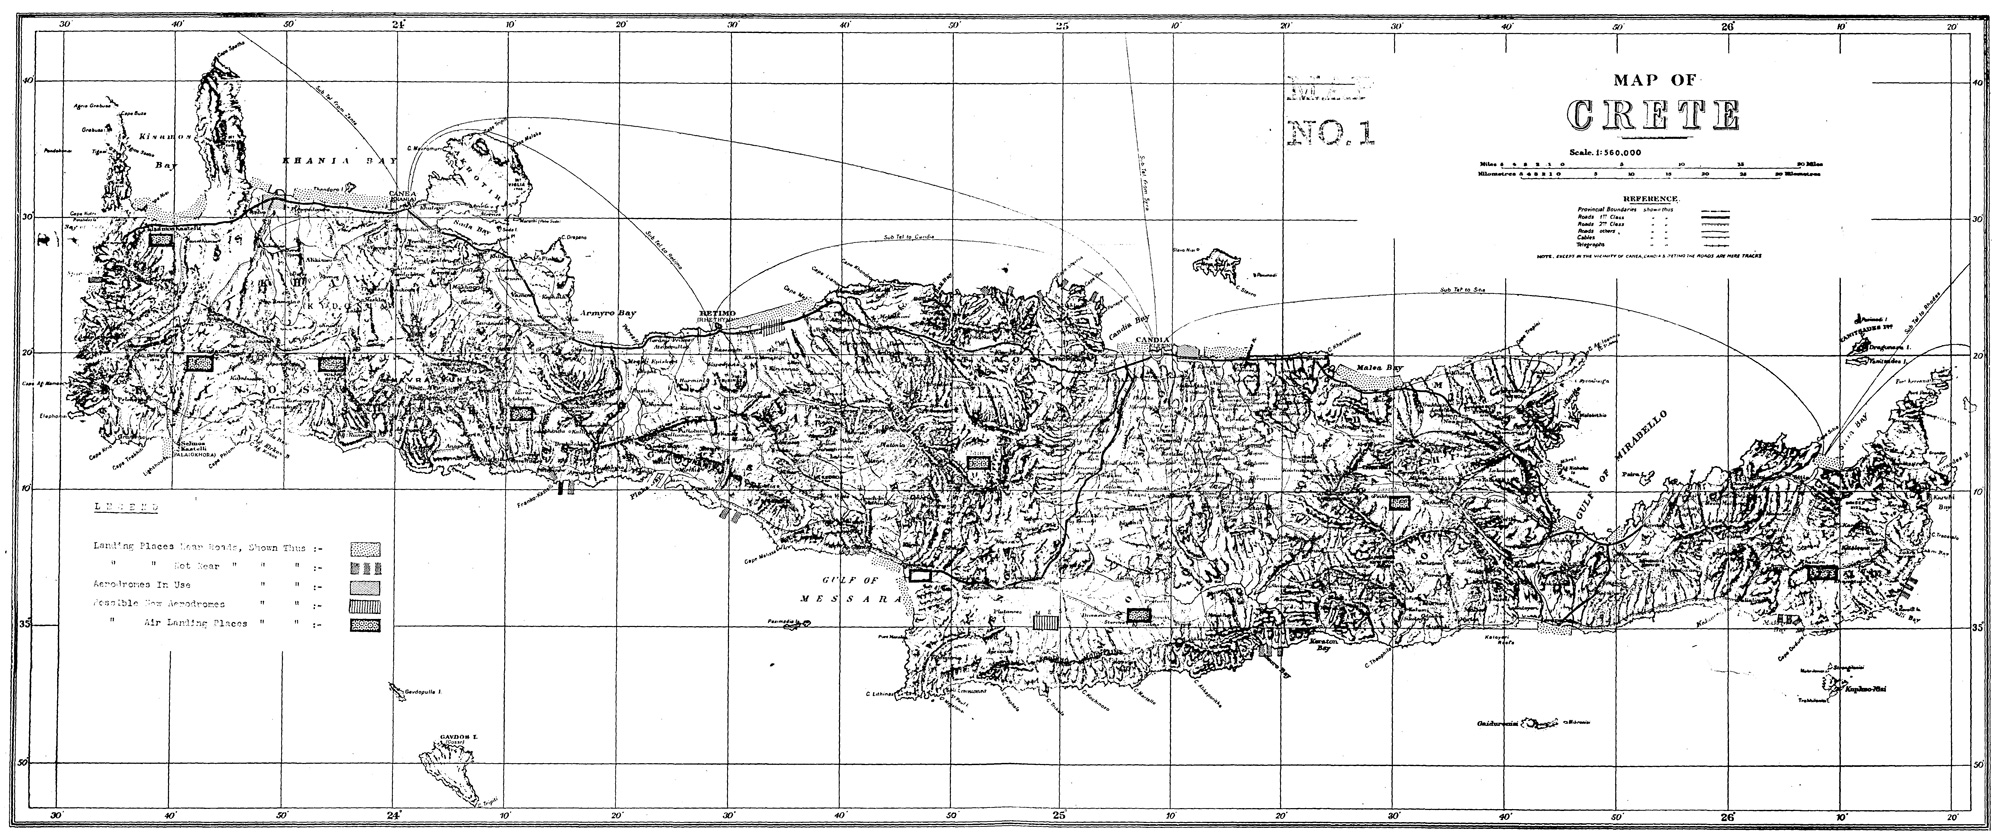 Map 1 - CRETE